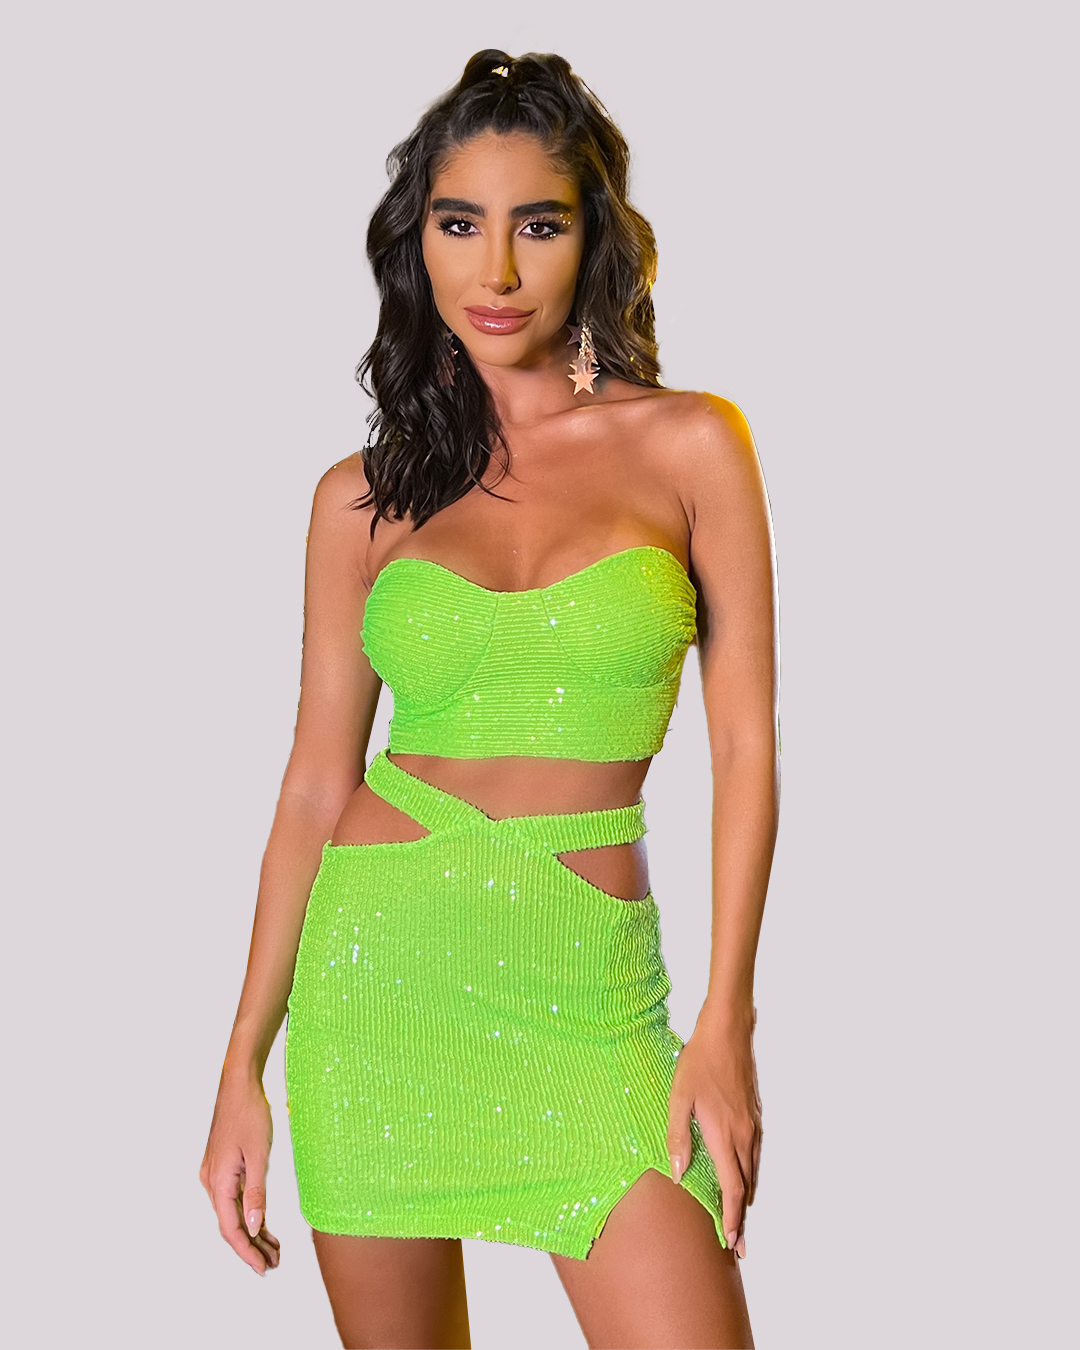 Dot Clothing - Set Dot Clothing Green Sequin Skirt - 1735VERDE